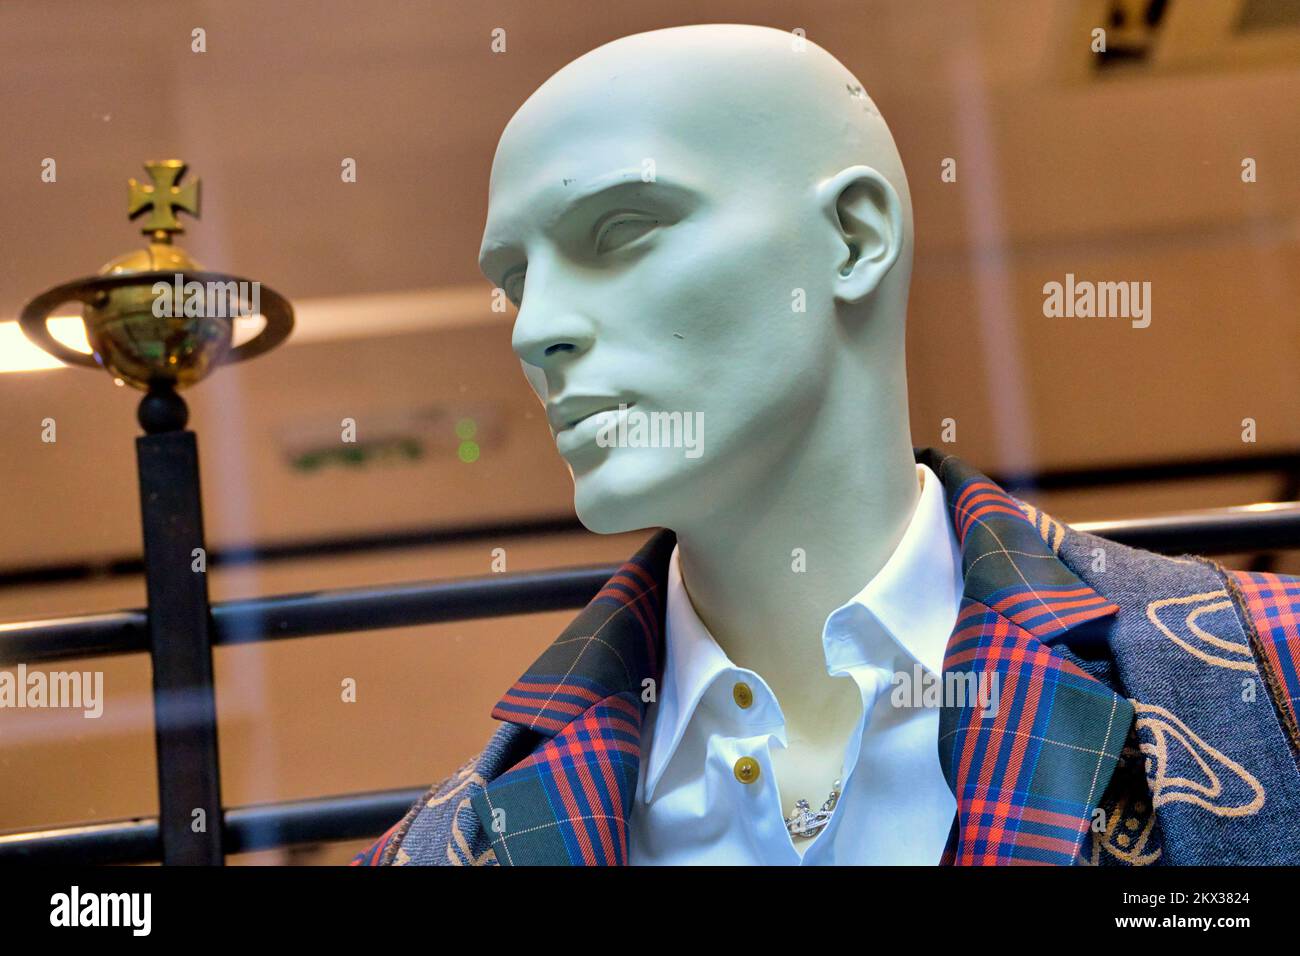 Vivienne Westwood designs iconic fashion Glasgow, Scotland, UK Stock Photo